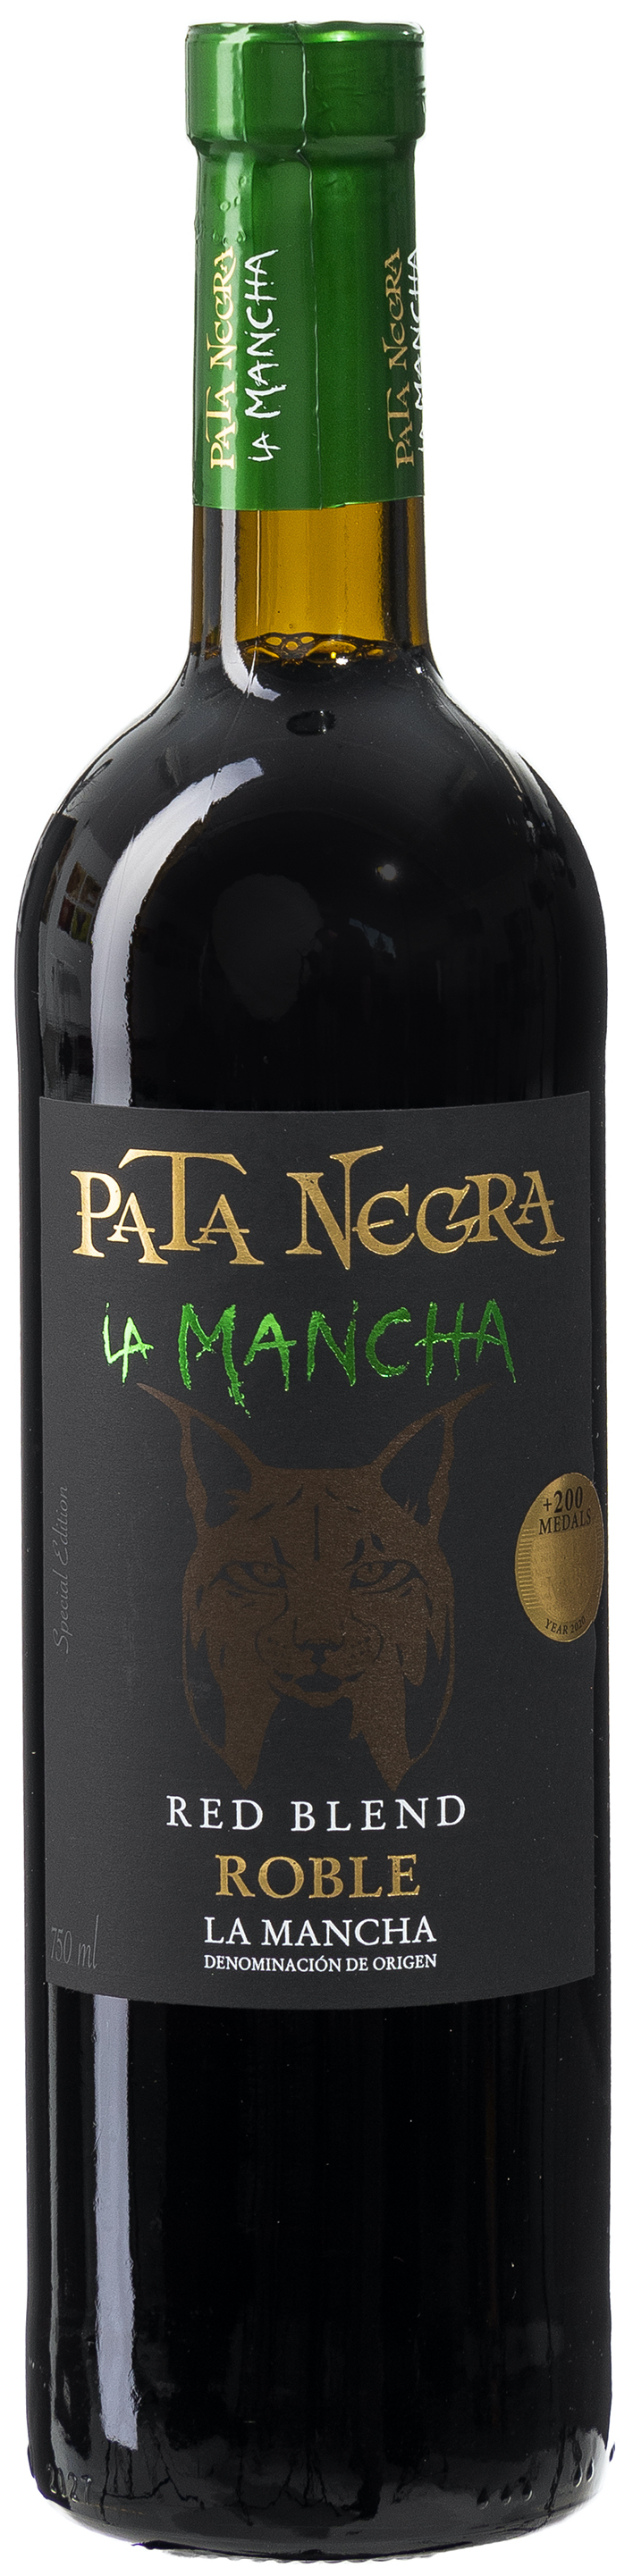 Pata Negra Roble La Mancha 13,5% vol. 0,75L